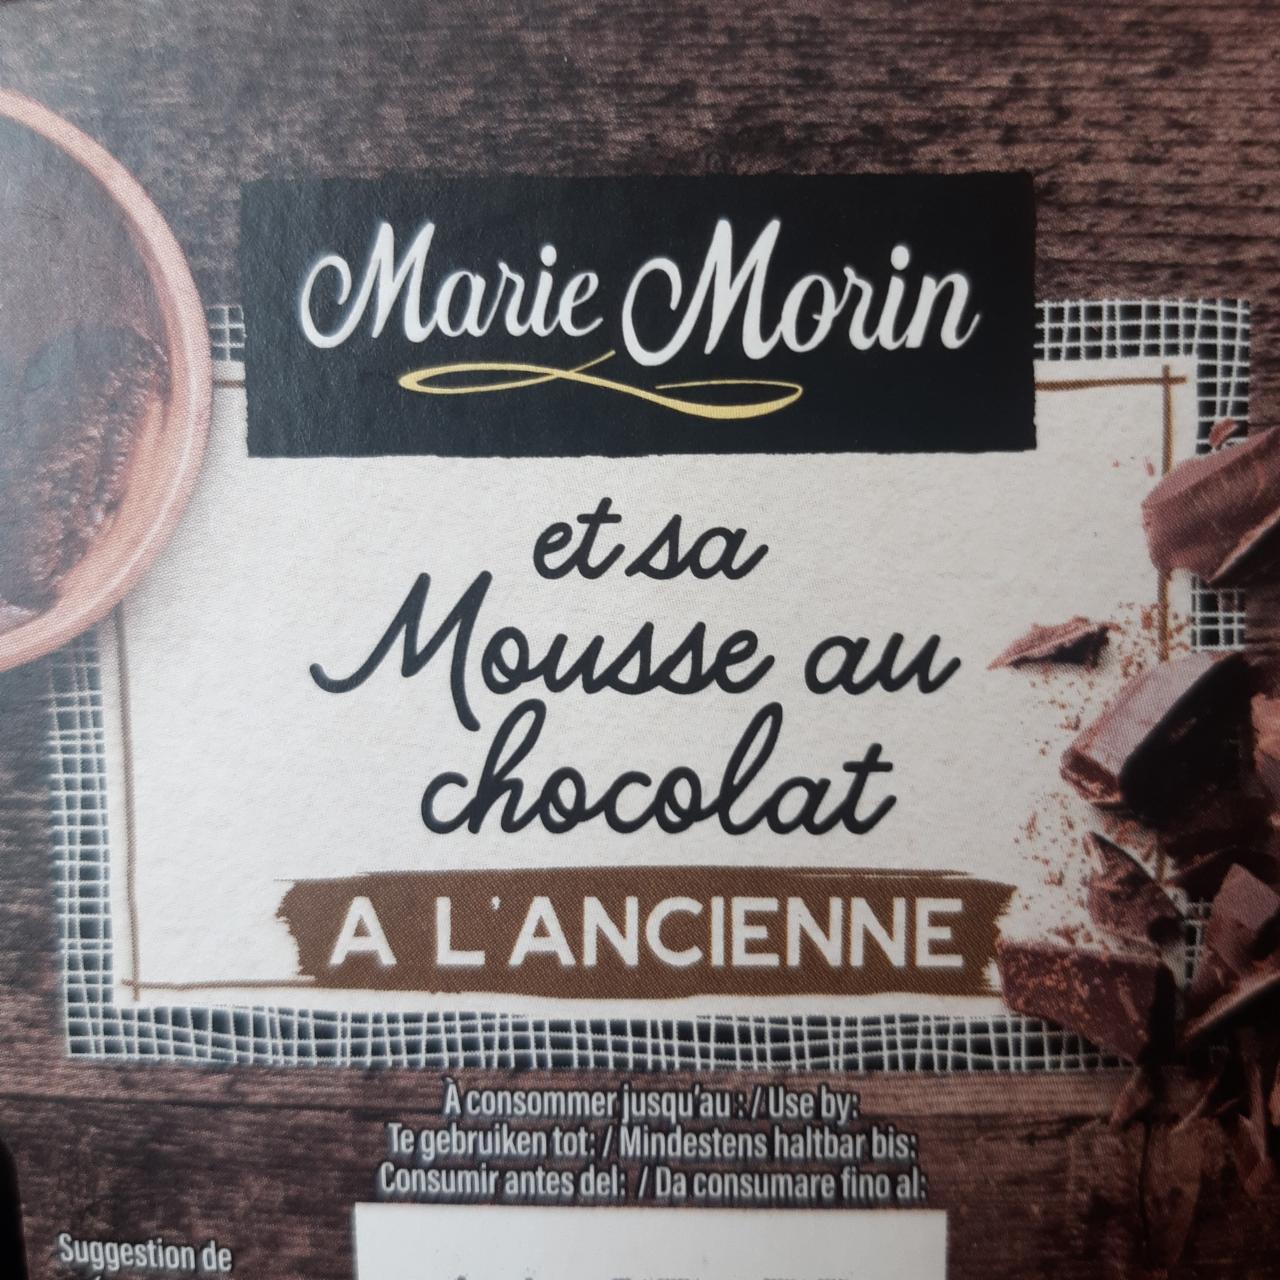 Fotografie - At sa Mousse au chocolat A L'ancienne Marie Morin